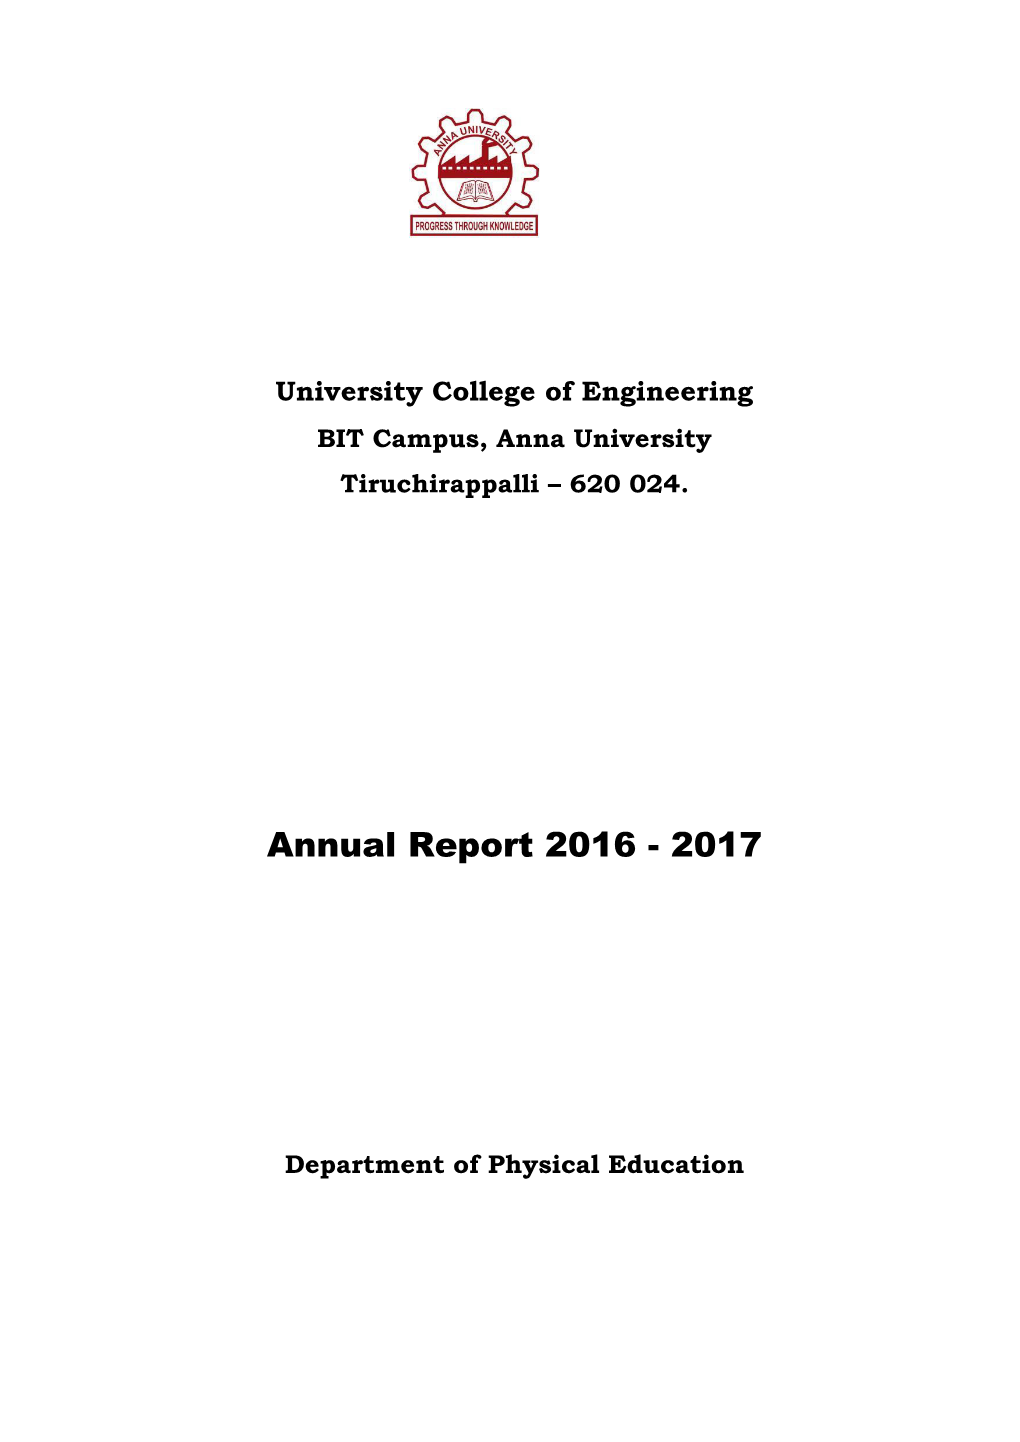 Annual Report Book 2016-2017